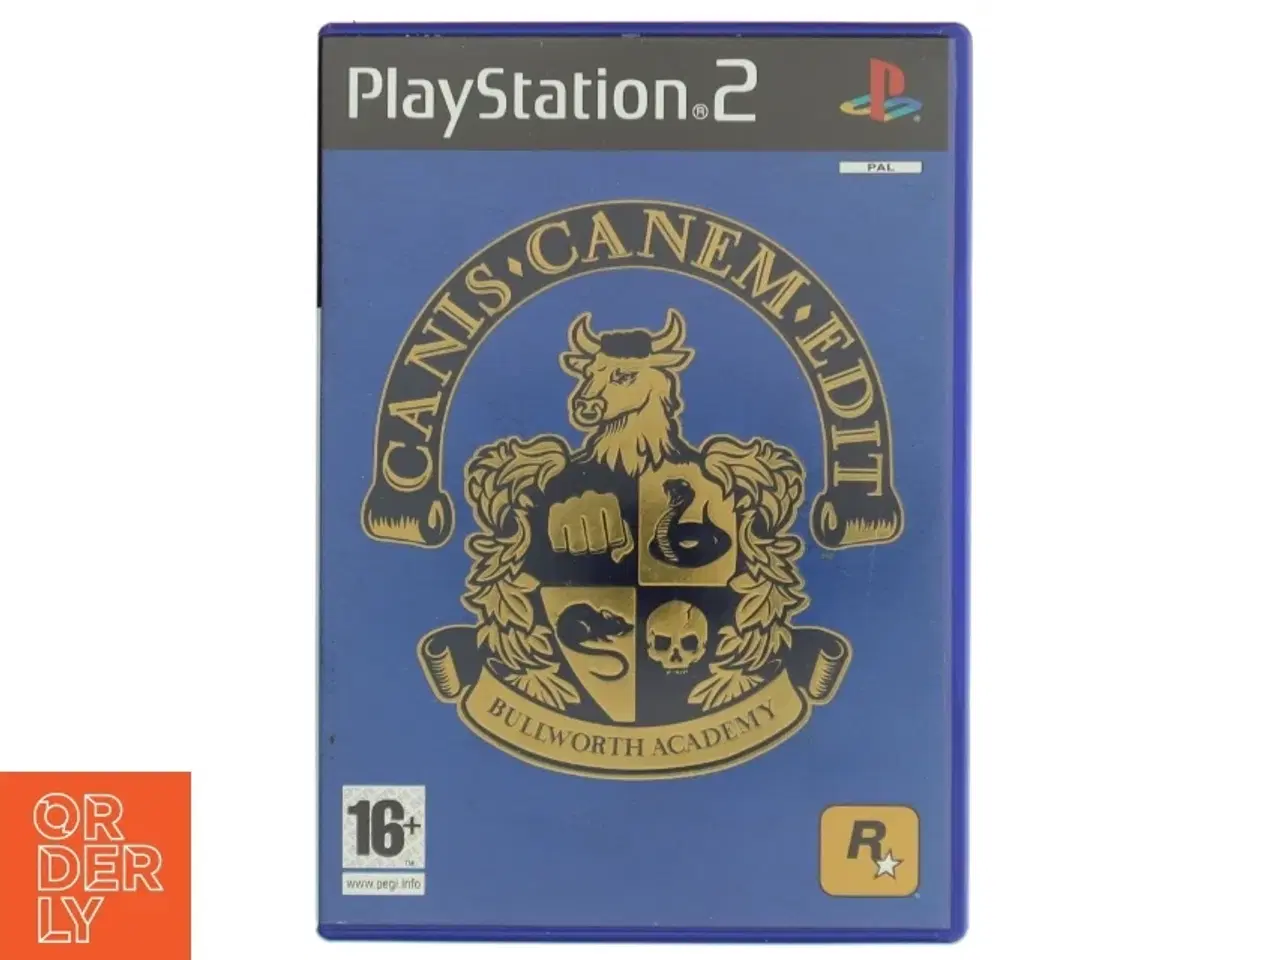 Billede 1 - Playstation 2 spil 'Canis Canem Edit' fra Rockstar Games